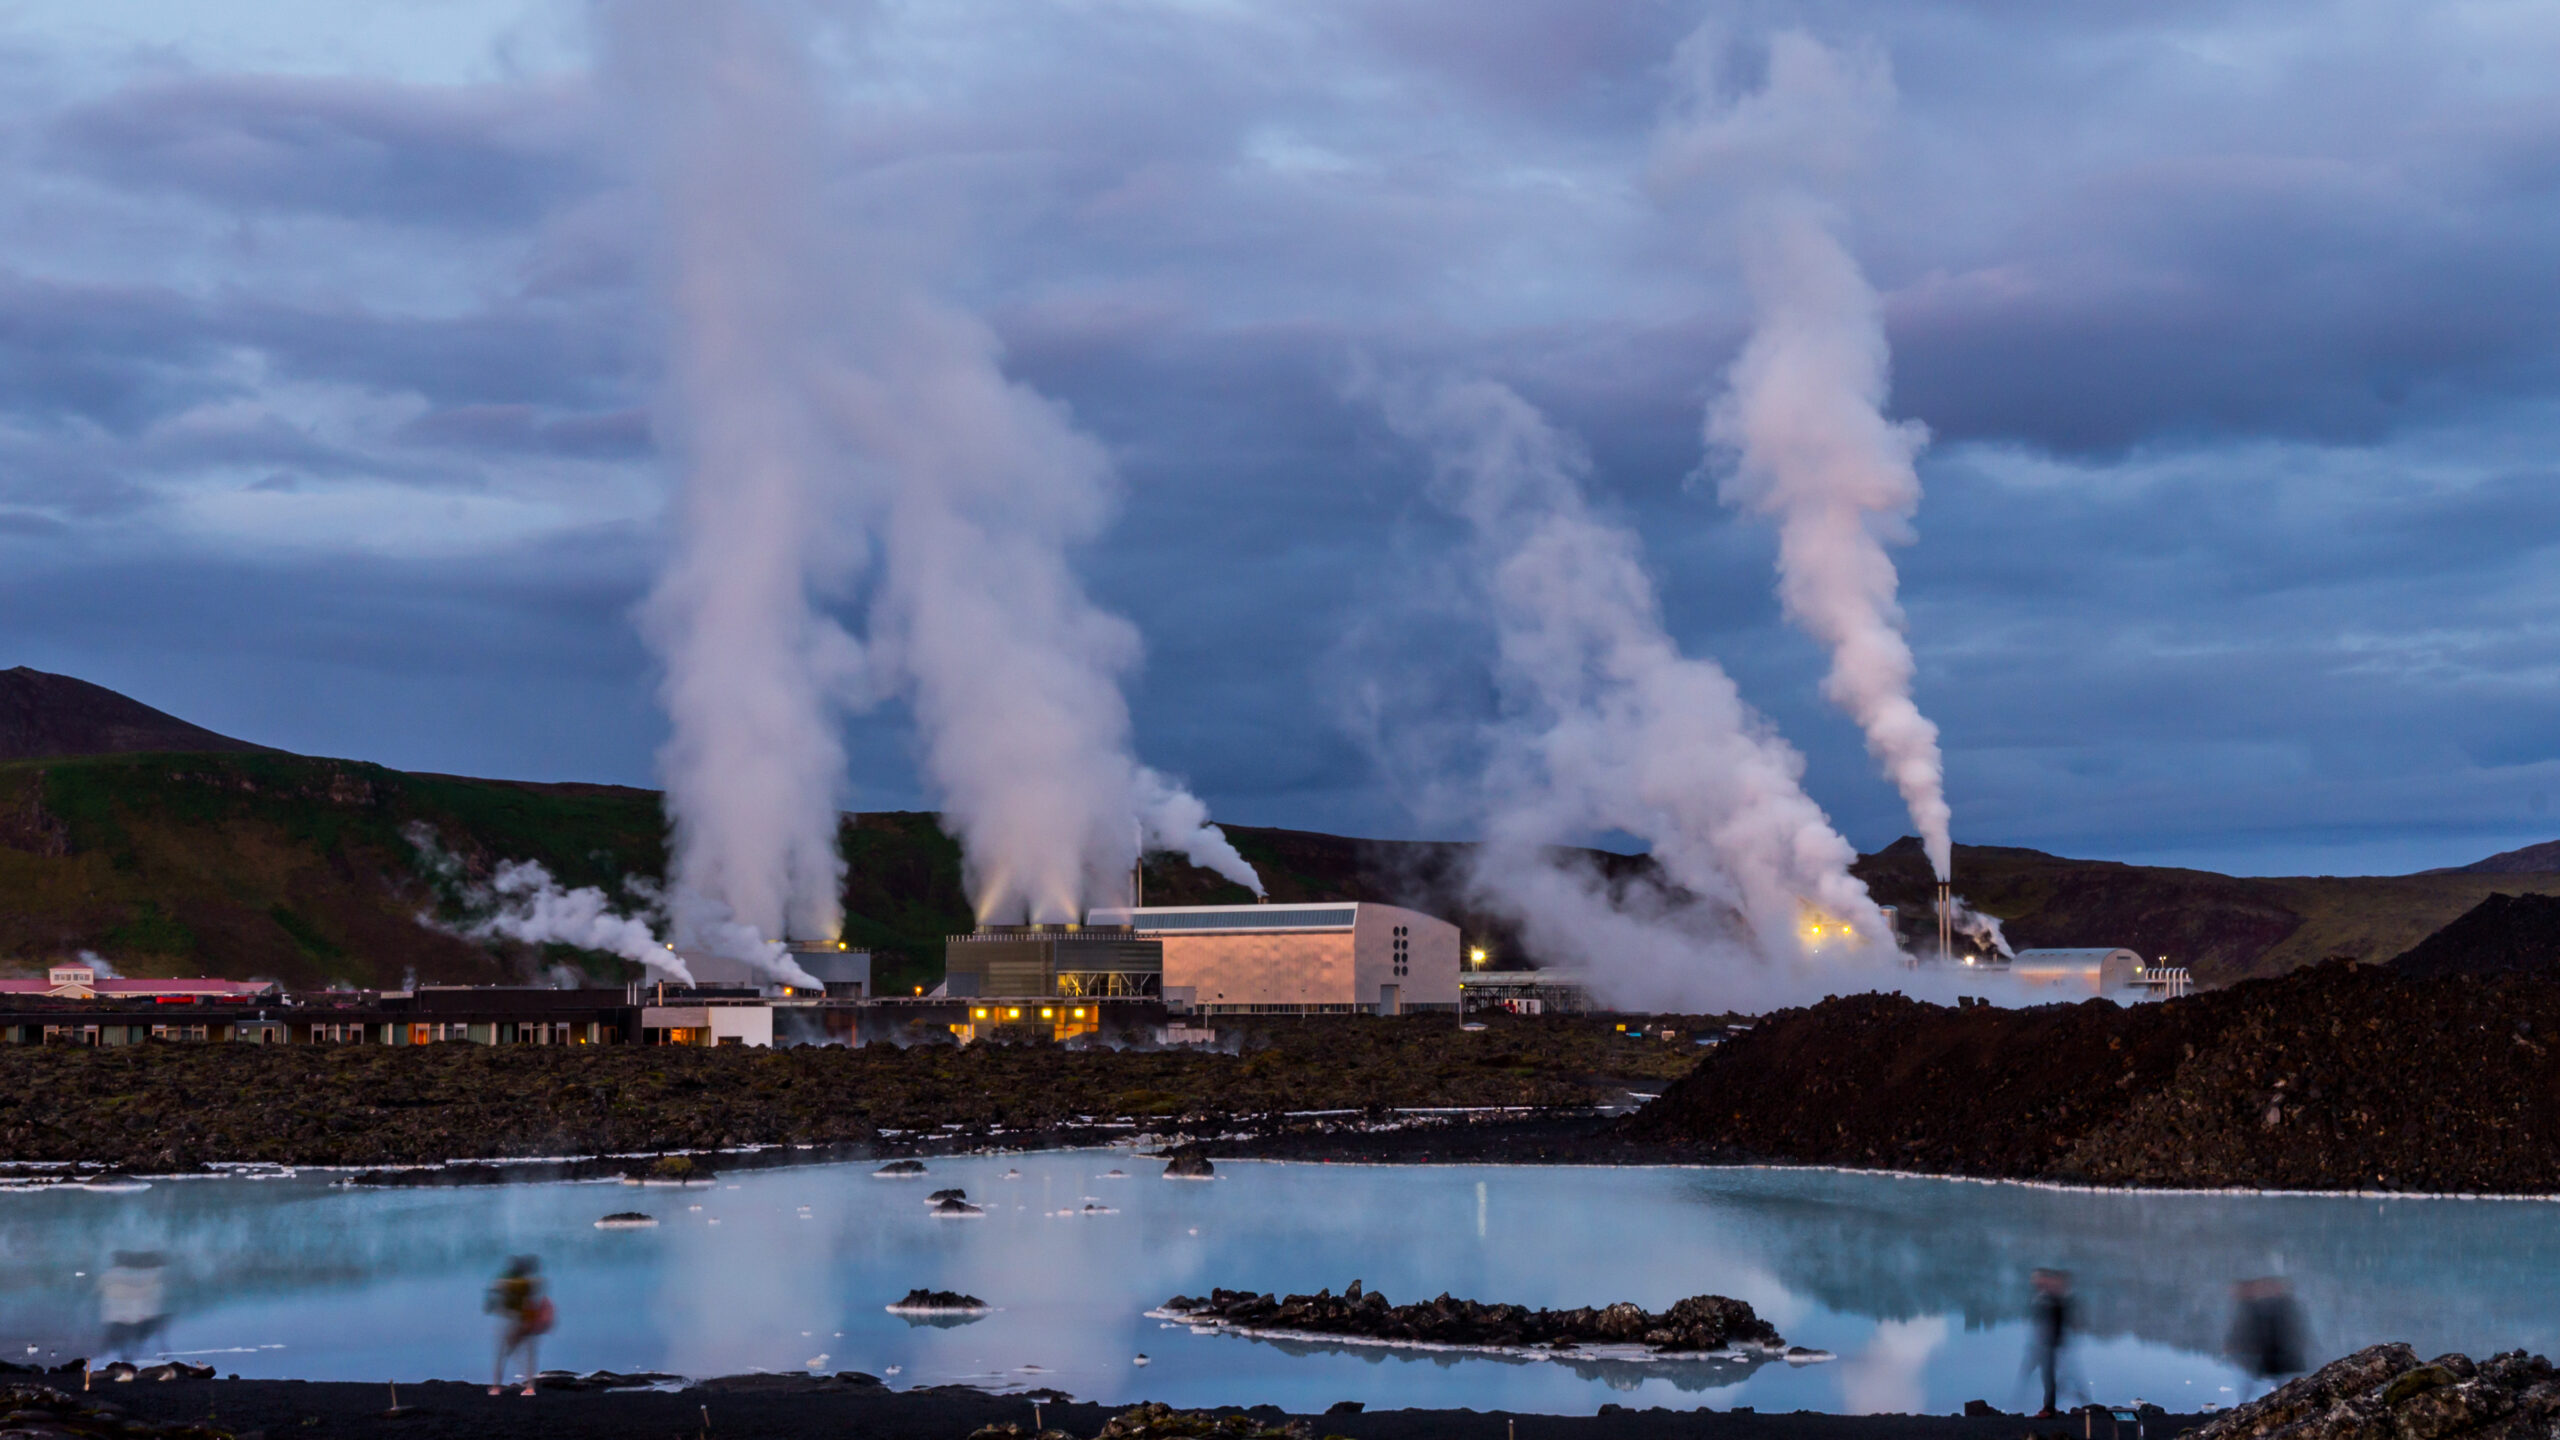 11centrali geotermiche per lo stoccaggio di energia rinnovabile